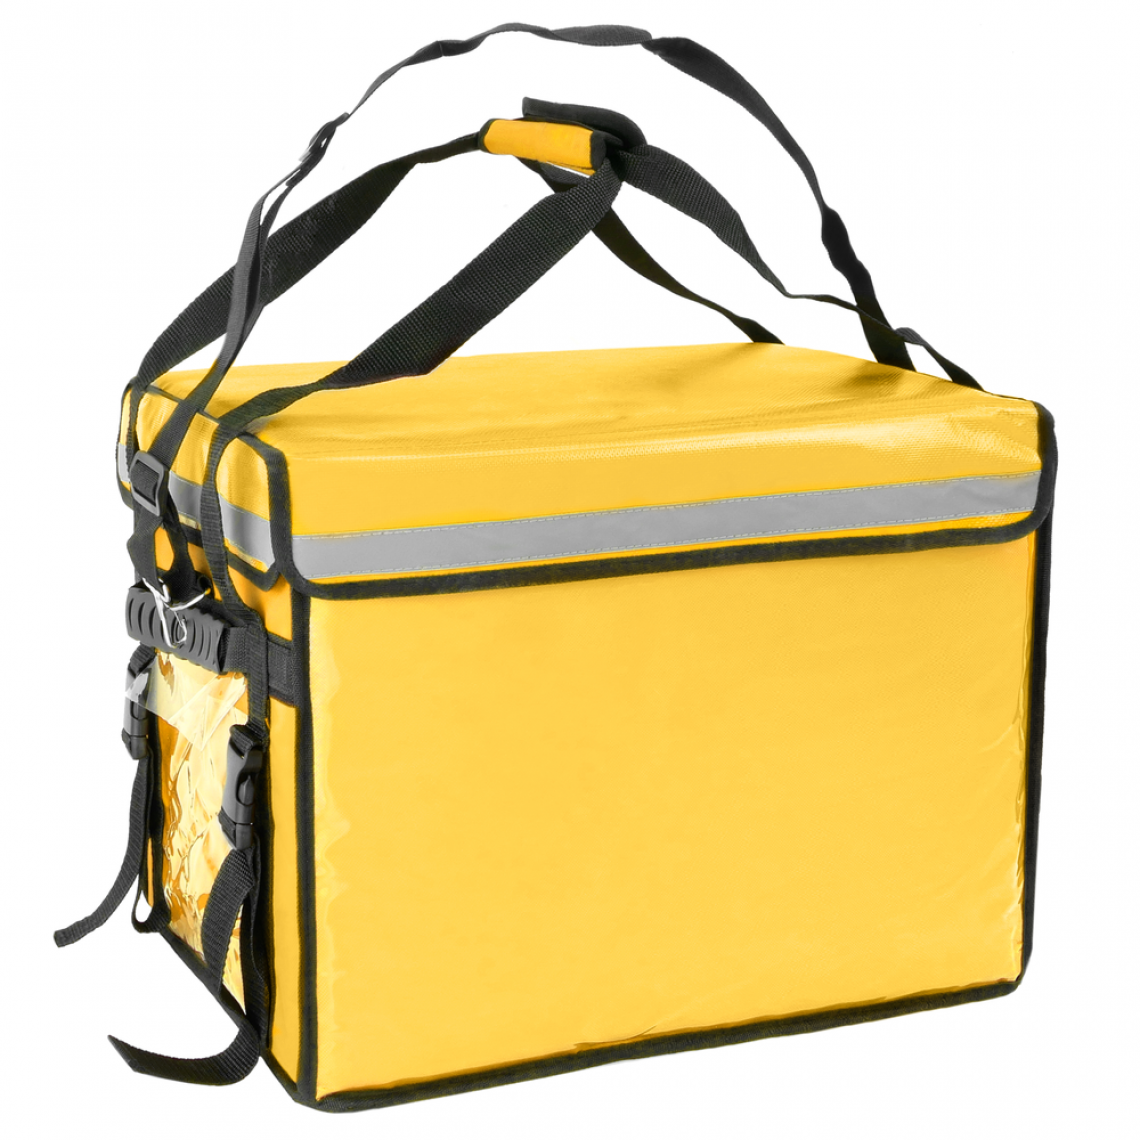 Citybag - Sac isotherme 50 x 39 x 39 cm jaune pour les plats cuisinés et la livraison de commandes alimentaires - Cuisine d'extérieur